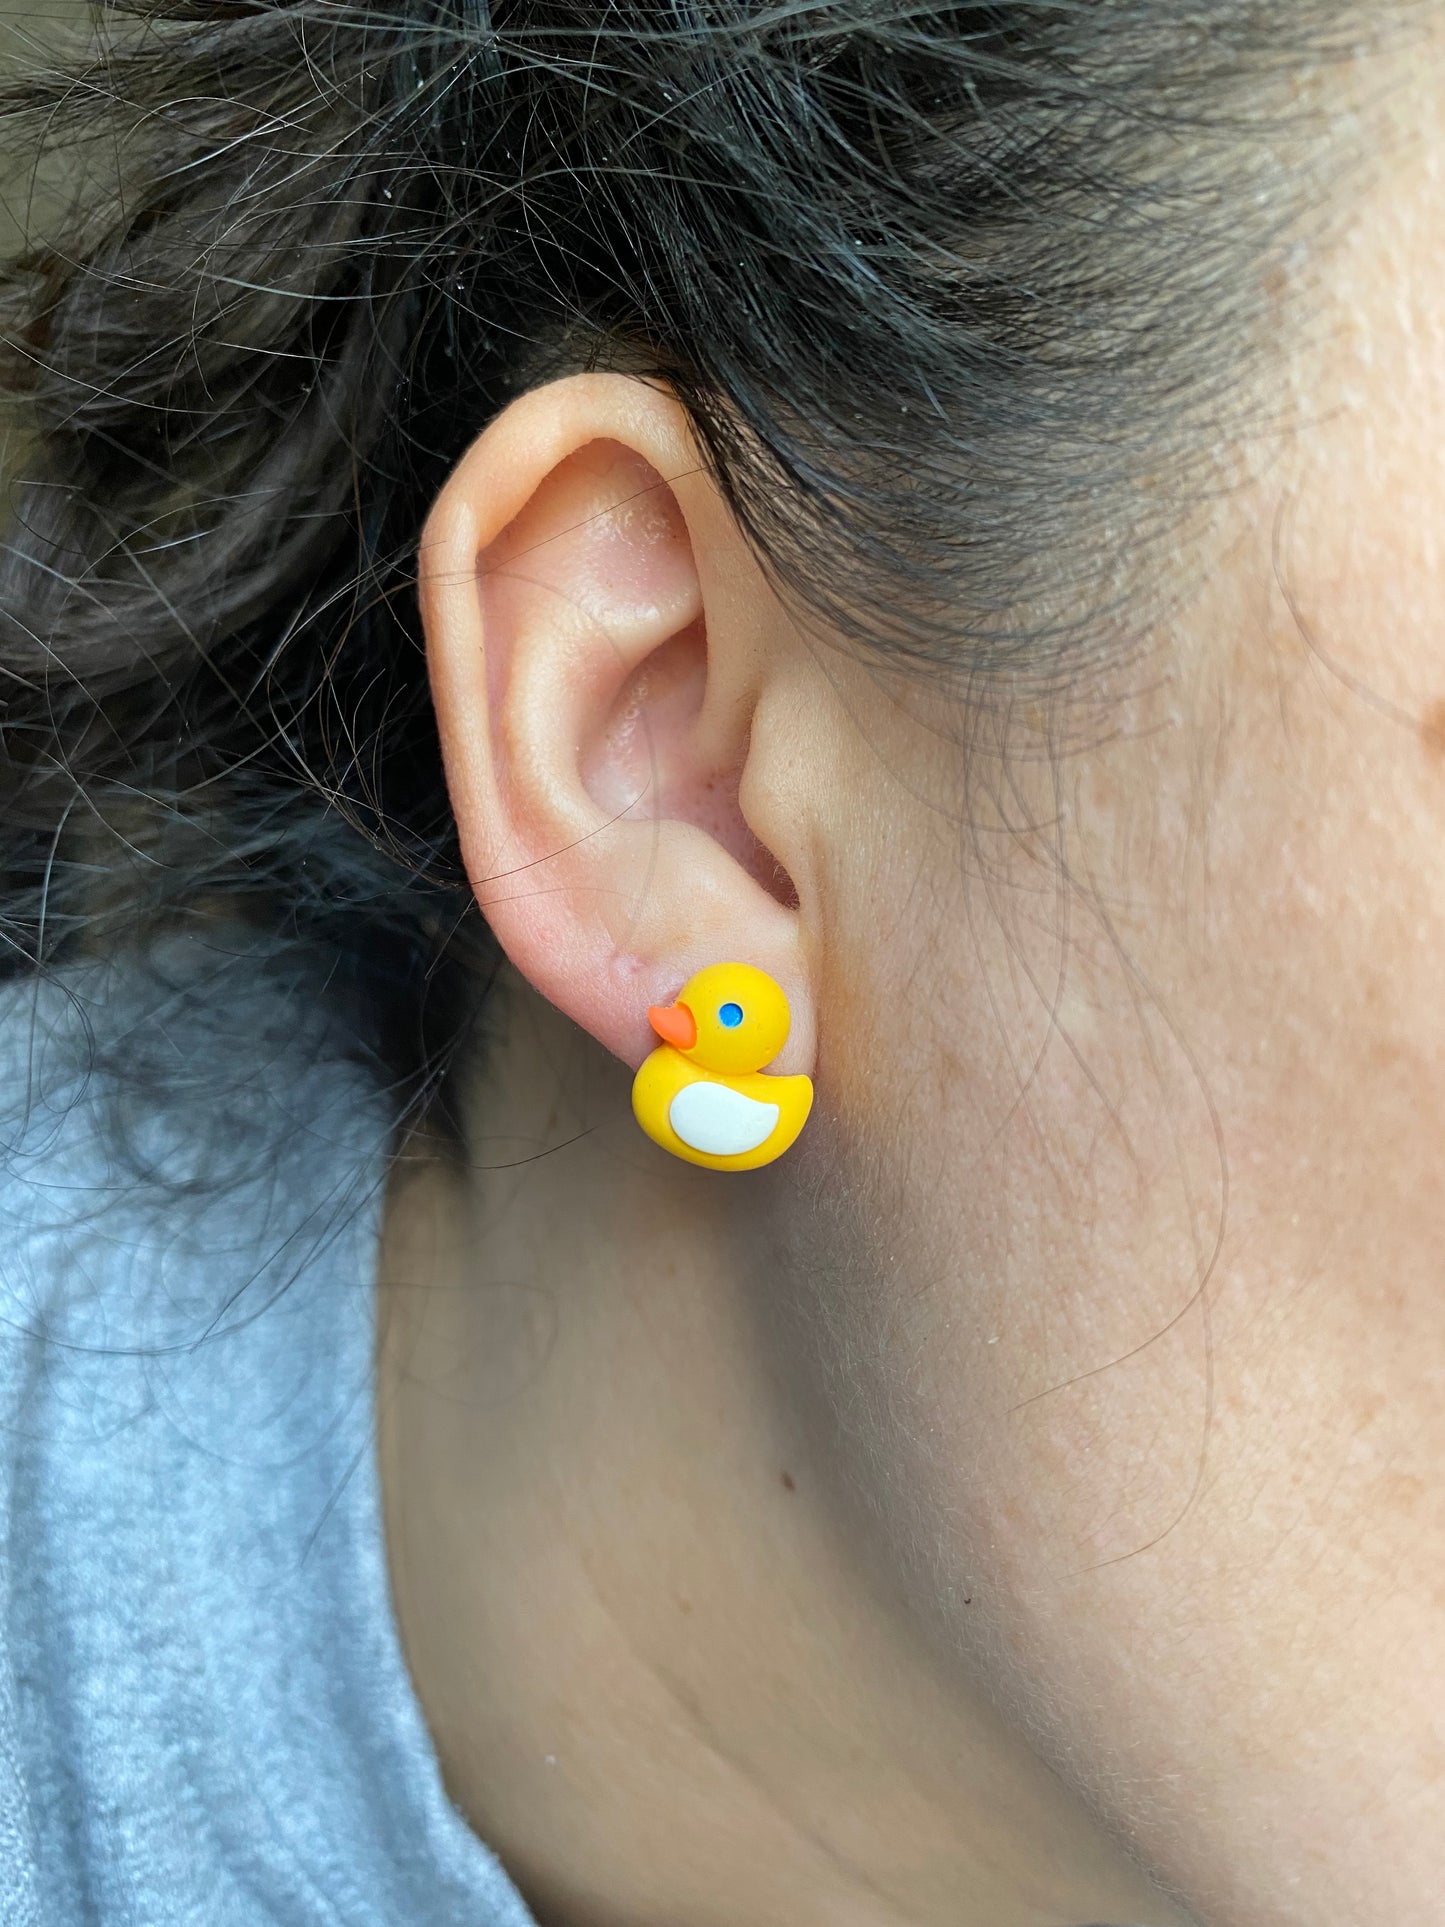 Rubber Ducky Duck Farm Animal Stud Earrings Gift